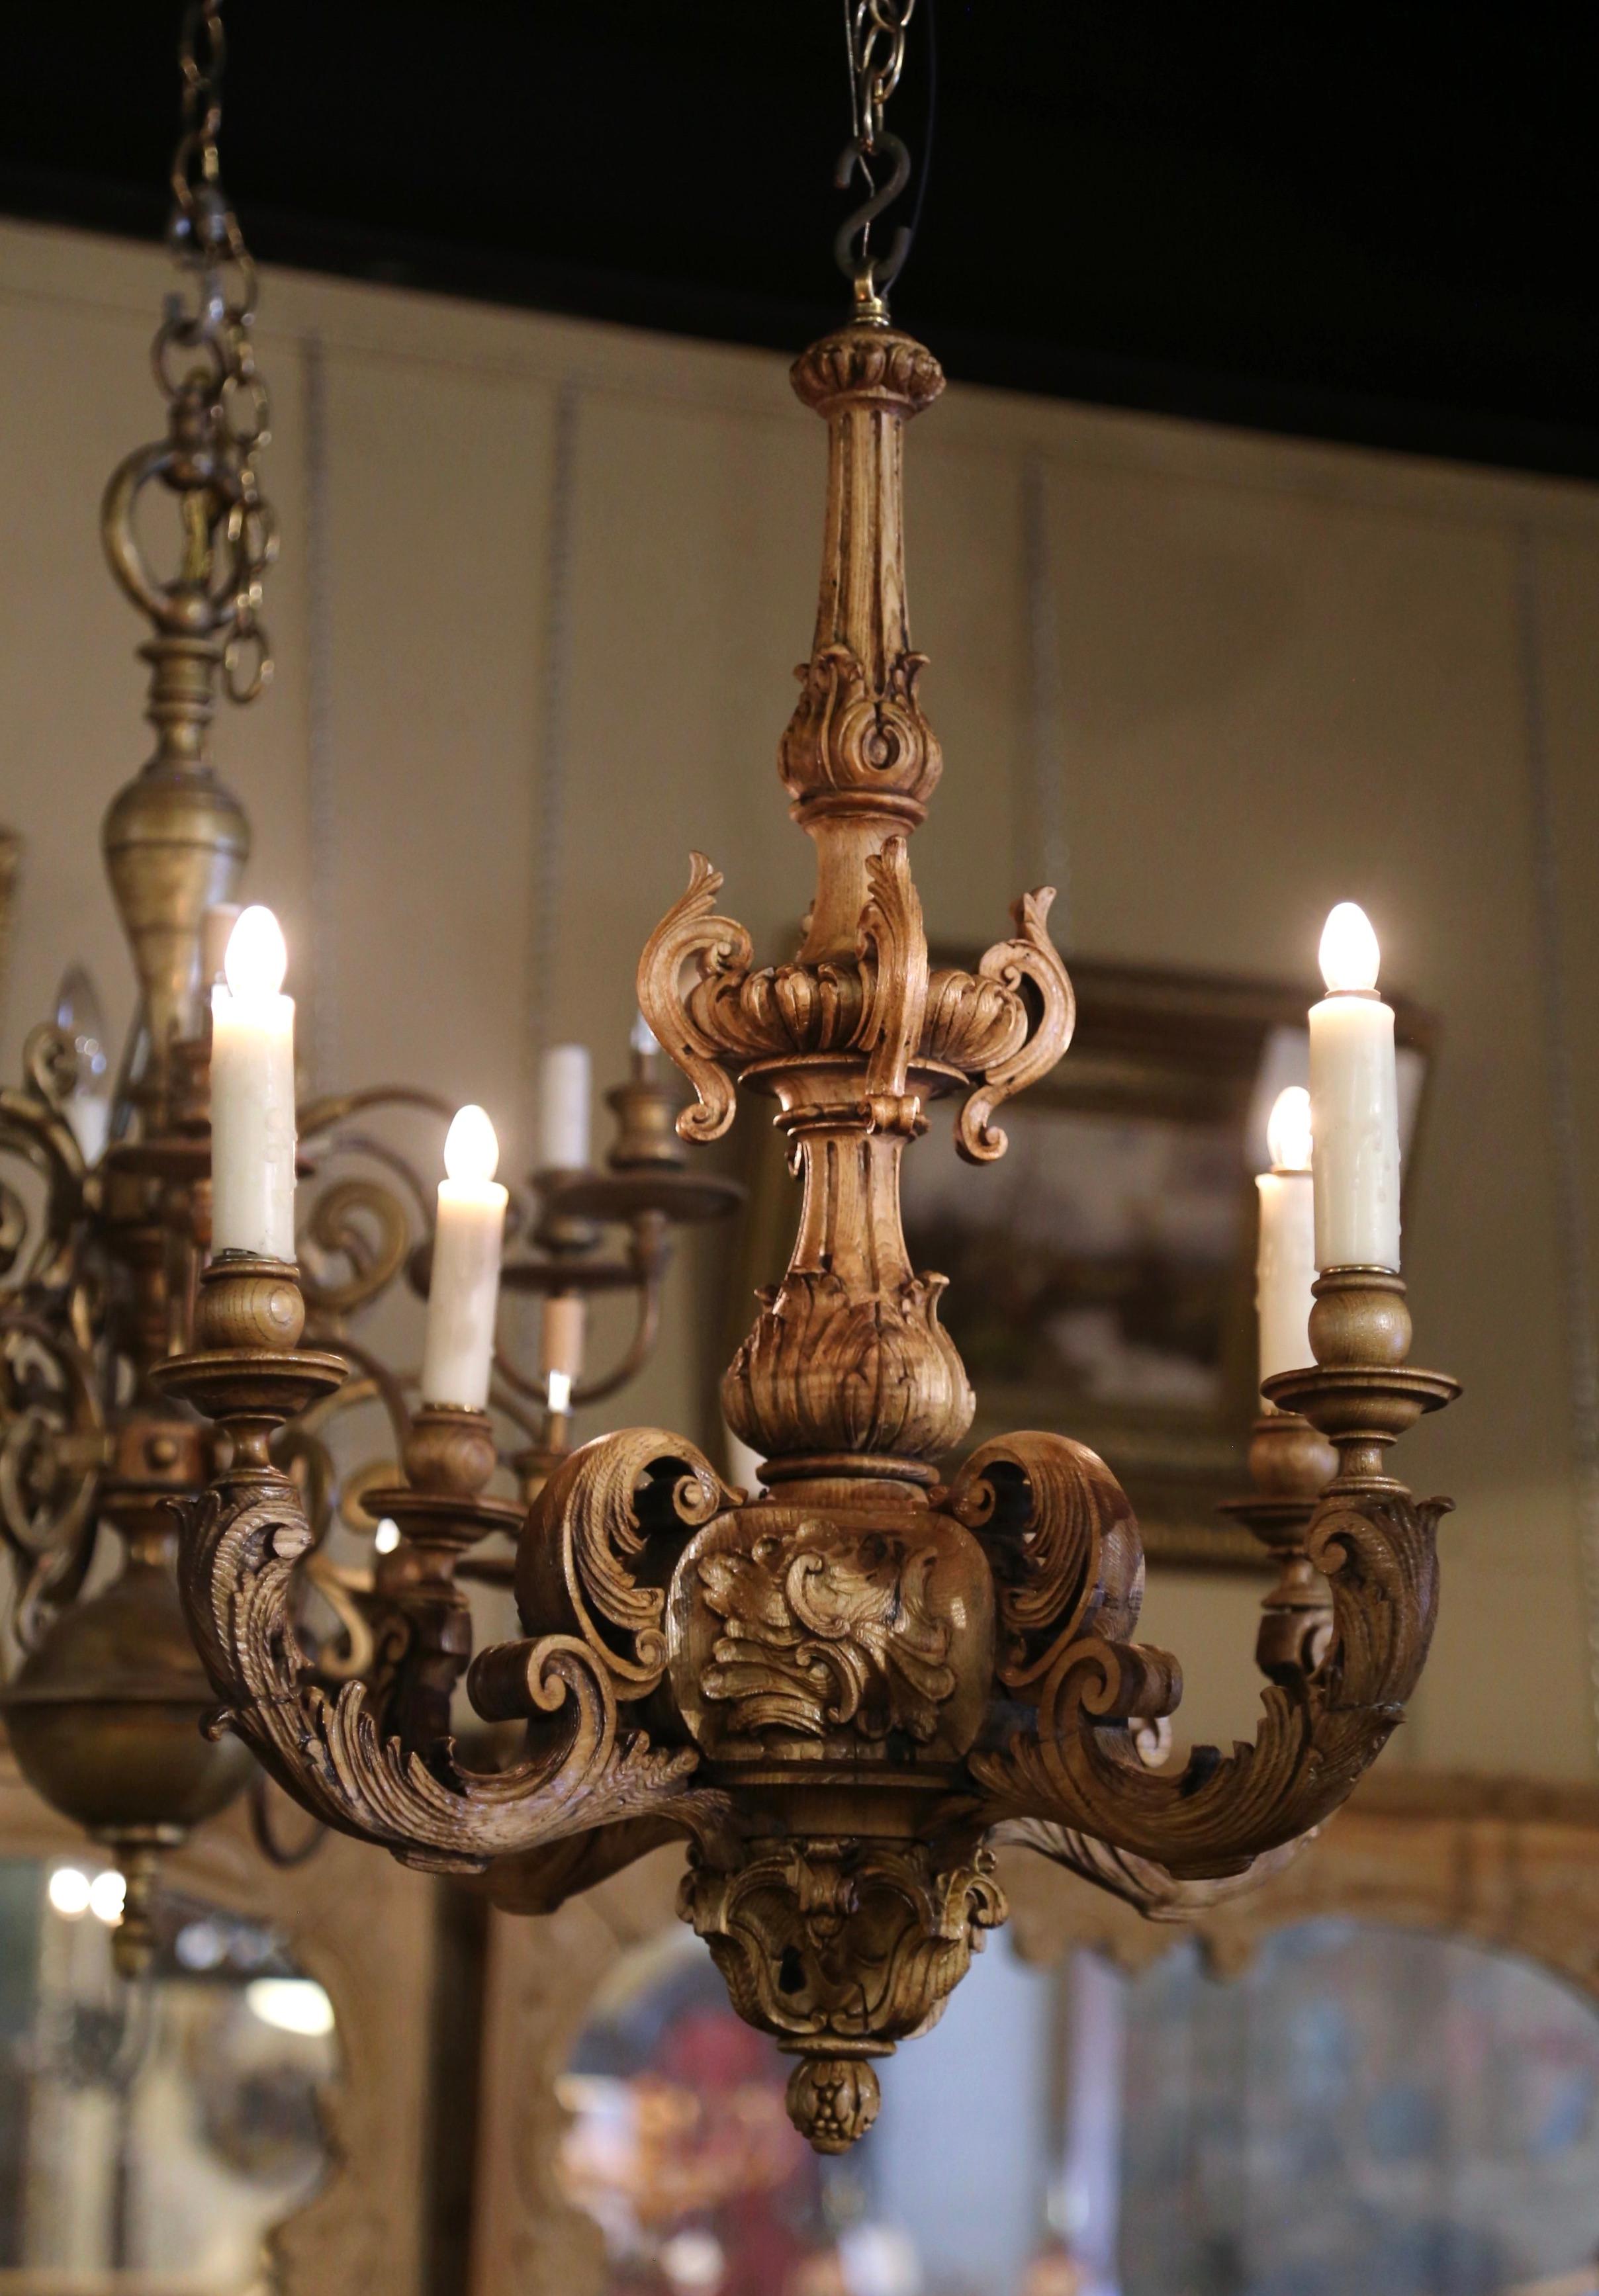 Dekorieren Sie ein Esszimmer oder ein DEN mit diesem eleganten antiken Holzkronleuchter. Die um 1880 in Frankreich gefertigte Leuchte hat eine runde Form und vier gleich lange Arme, die sich um den dicken, kunstvoll geschnitzten Mittelstamm